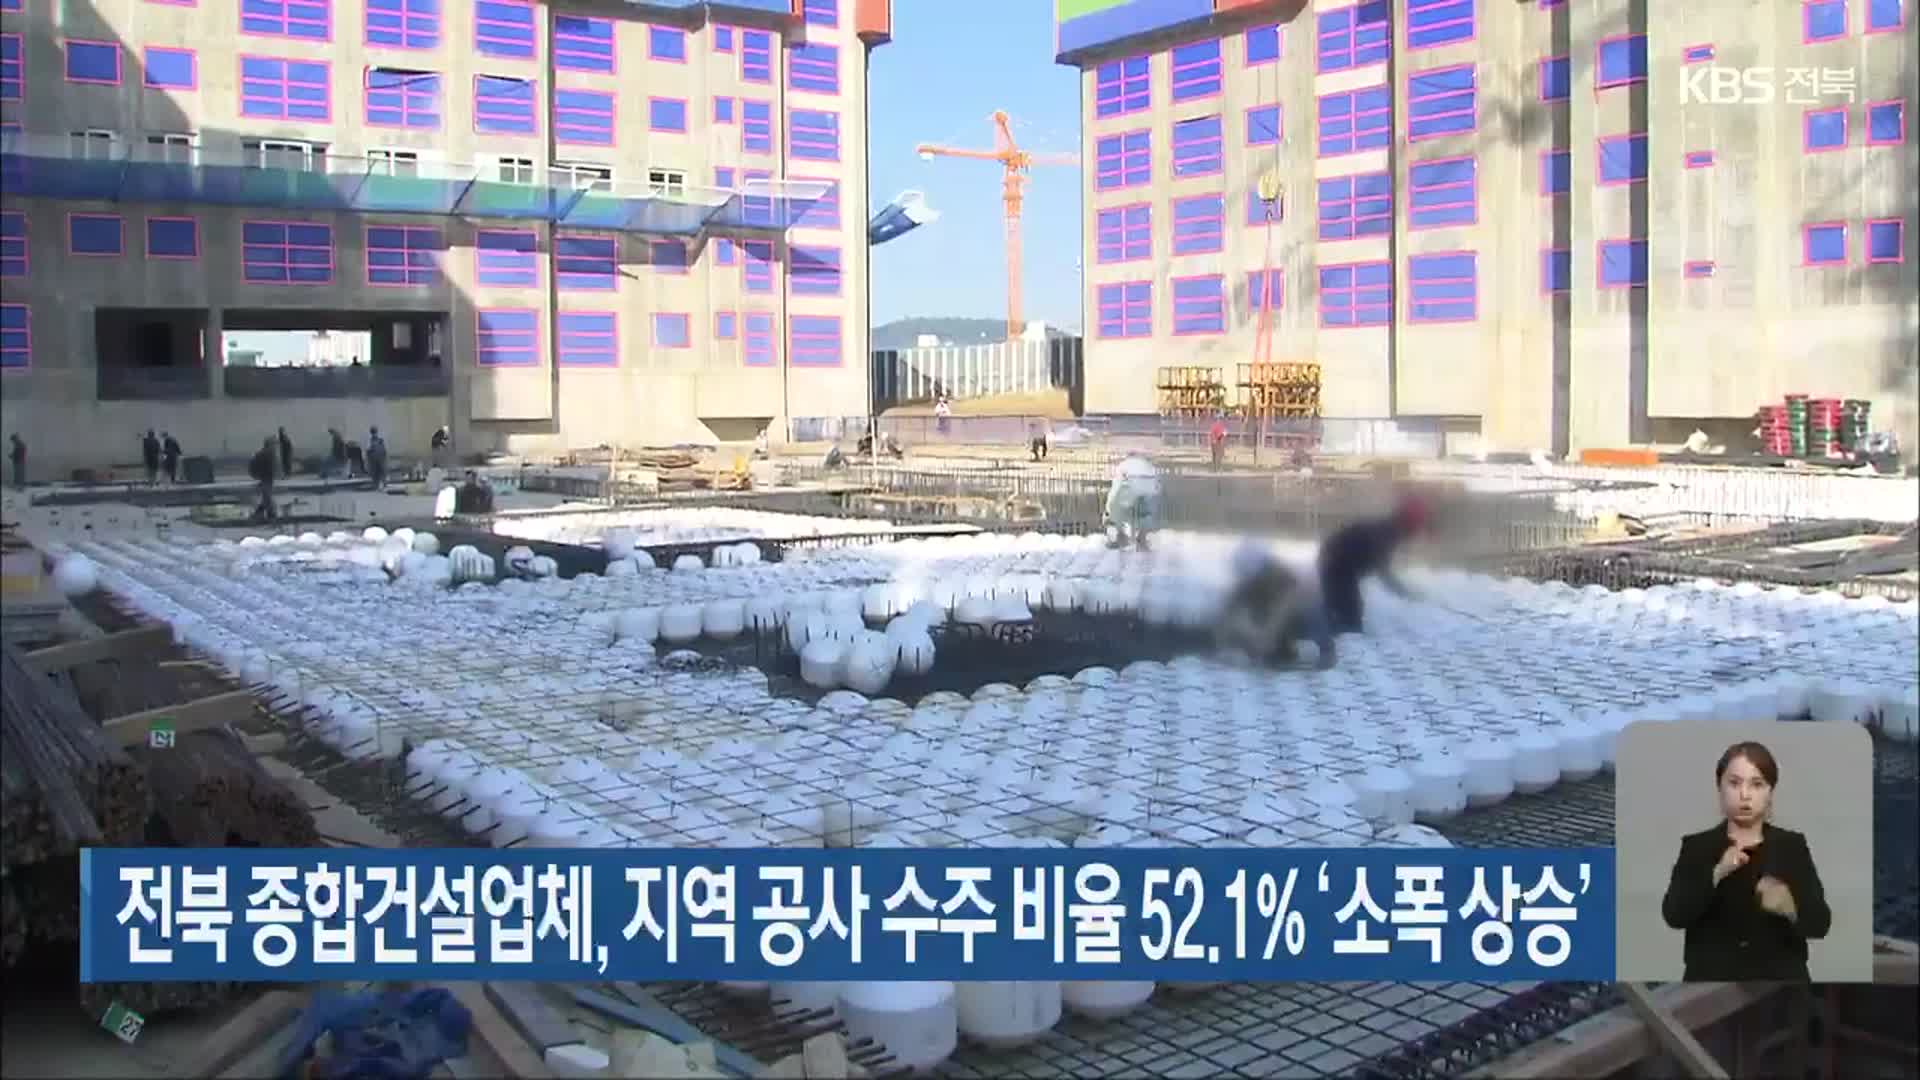 전북 종합건설업체, 지역 공사 수주 비율 52.1% ‘소폭 상승’